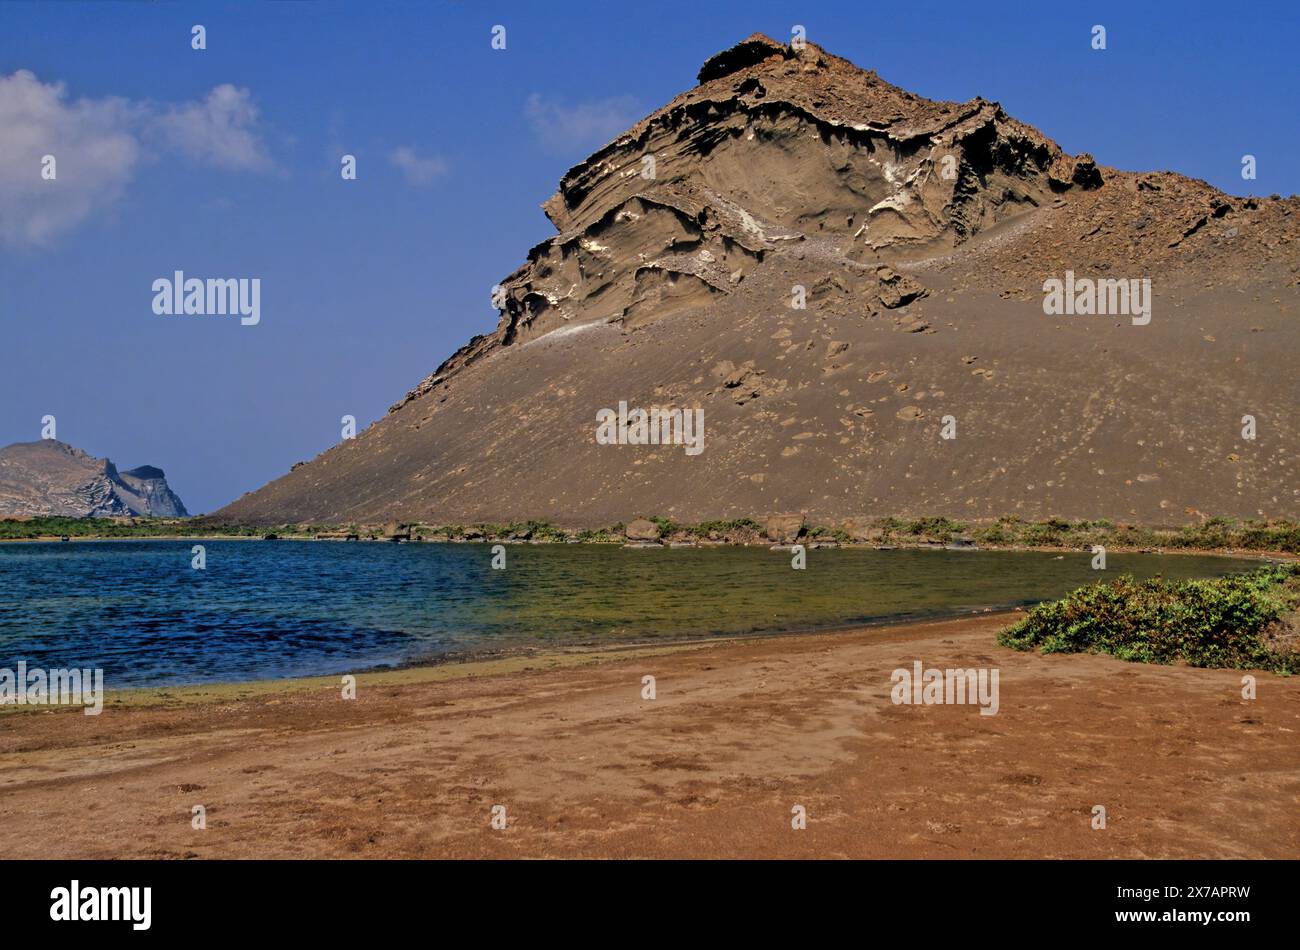 Zubair Group, Al Zubair Group ou Zubayr Group est un groupe de 10 îles volcaniques majeures, au sommet d'un volcan bouclier sous-jacent dans la mer Rouge Banque D'Images